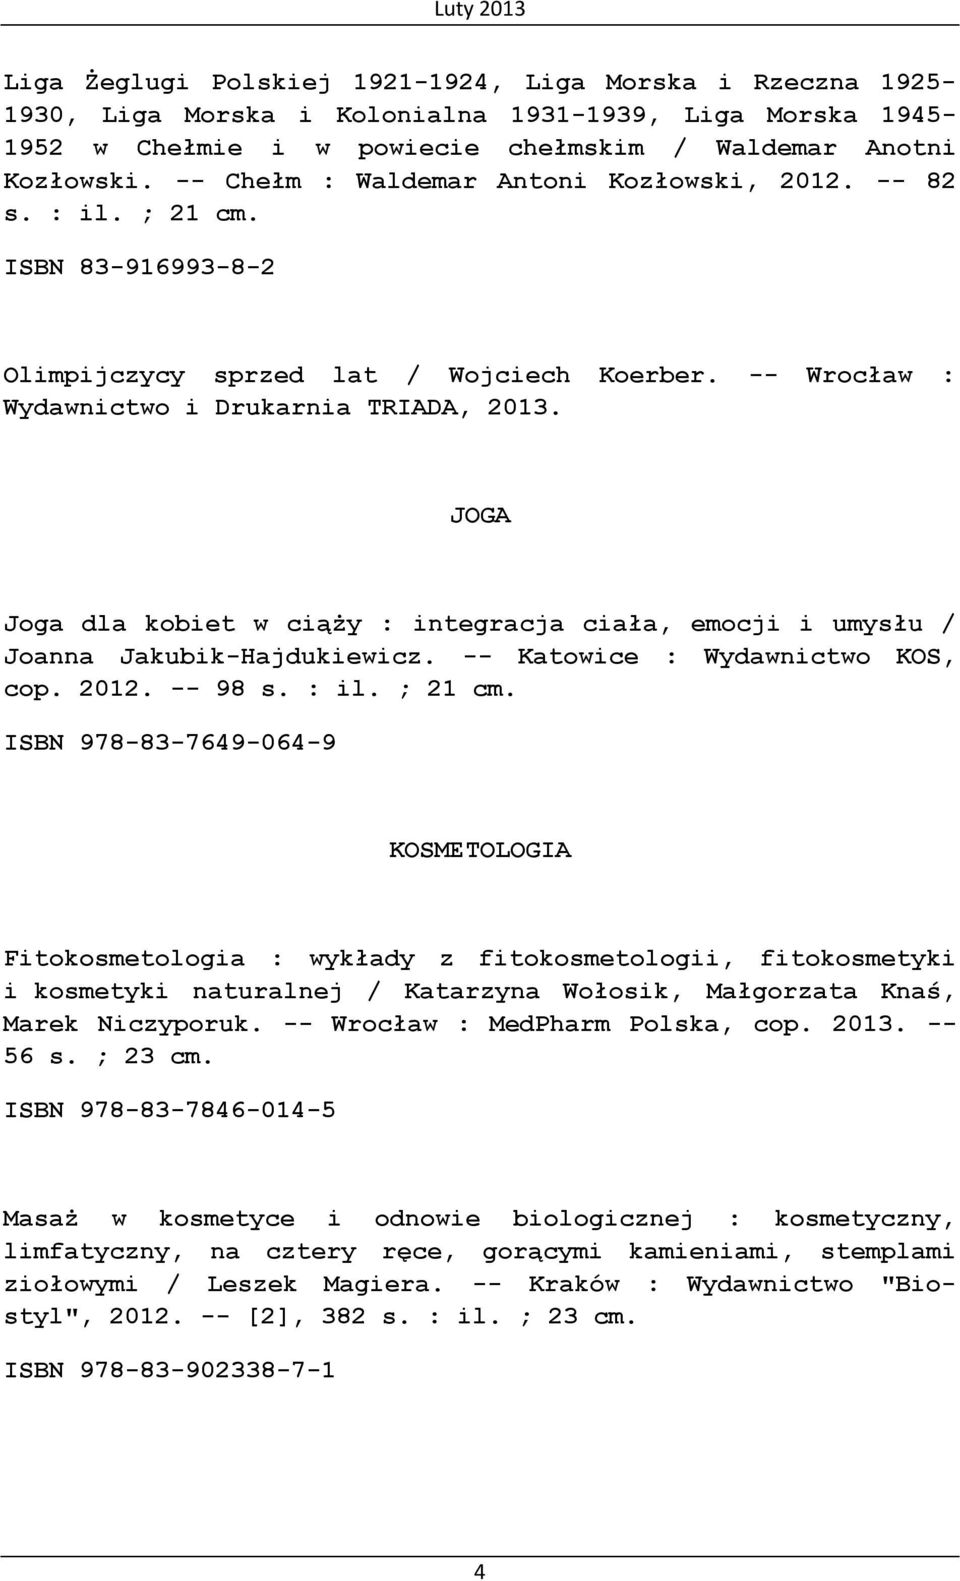 JOGA Joga dla kobiet w ciąży : integracja ciała, emocji i umysłu / Joanna Jakubik-Hajdukiewicz. -- Katowice : Wydawnictwo KOS, cop. 2012. -- 98 s. : il. ; 21 cm.